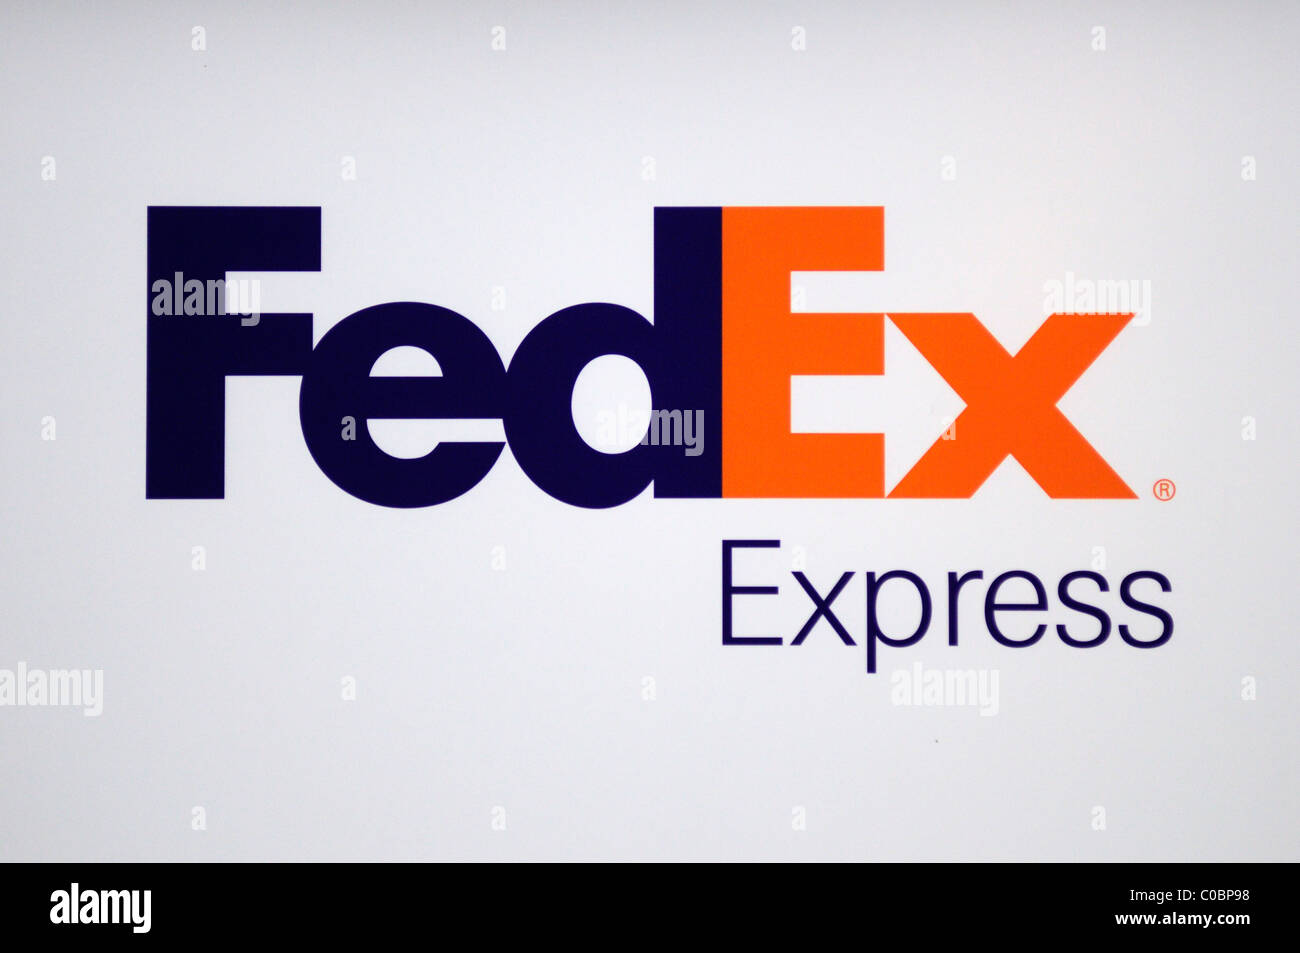 FedEx Express federale segno, il logo di Symbol, London, England, Regno Unito Foto Stock